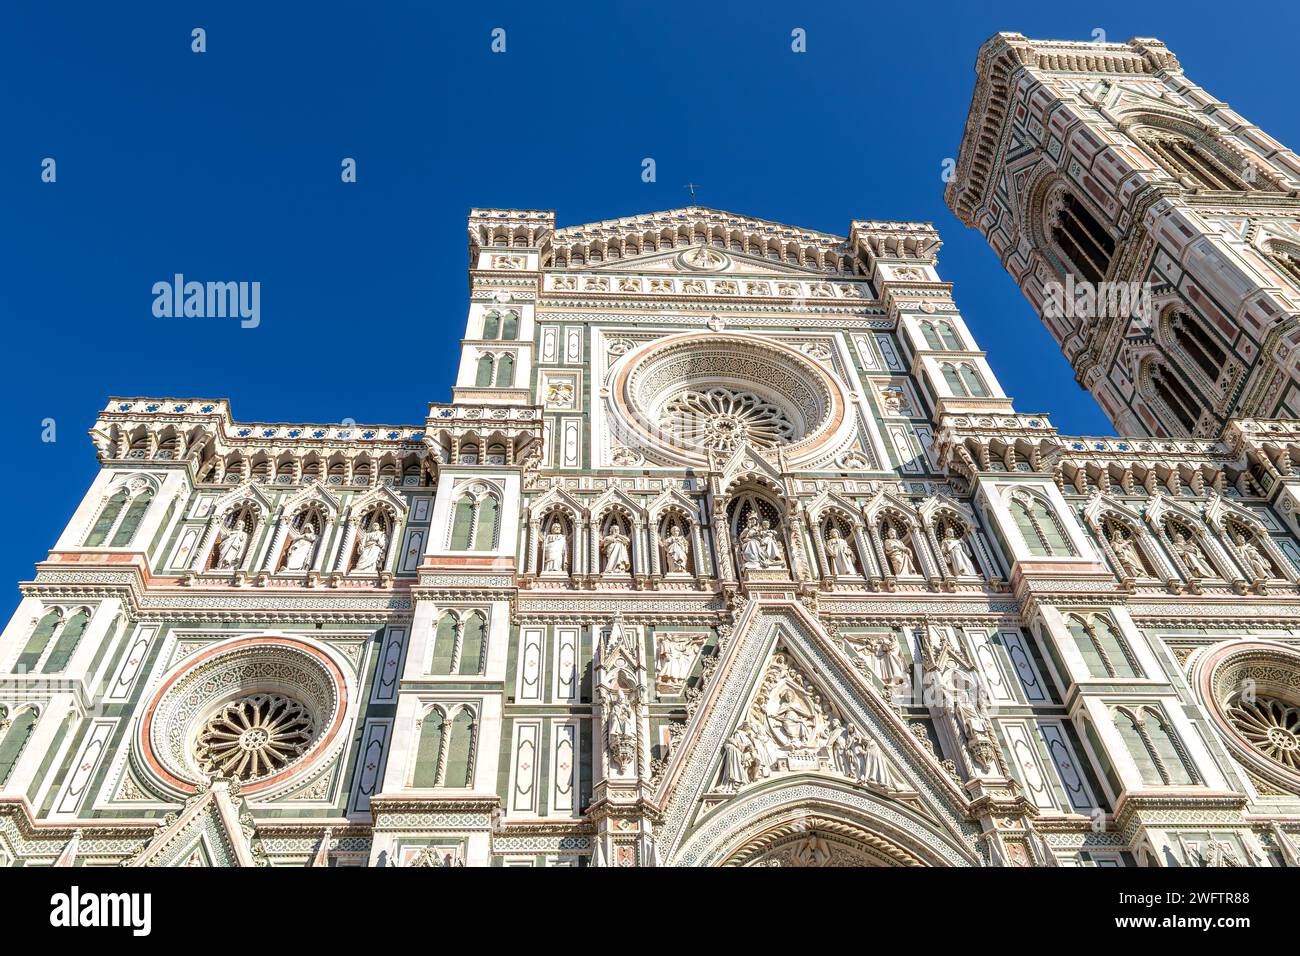 L'esterno in marmo bianco e verde della Cattedrale di Santa Maria del Fiore o del Duomo di Firenze, Italia Foto Stock